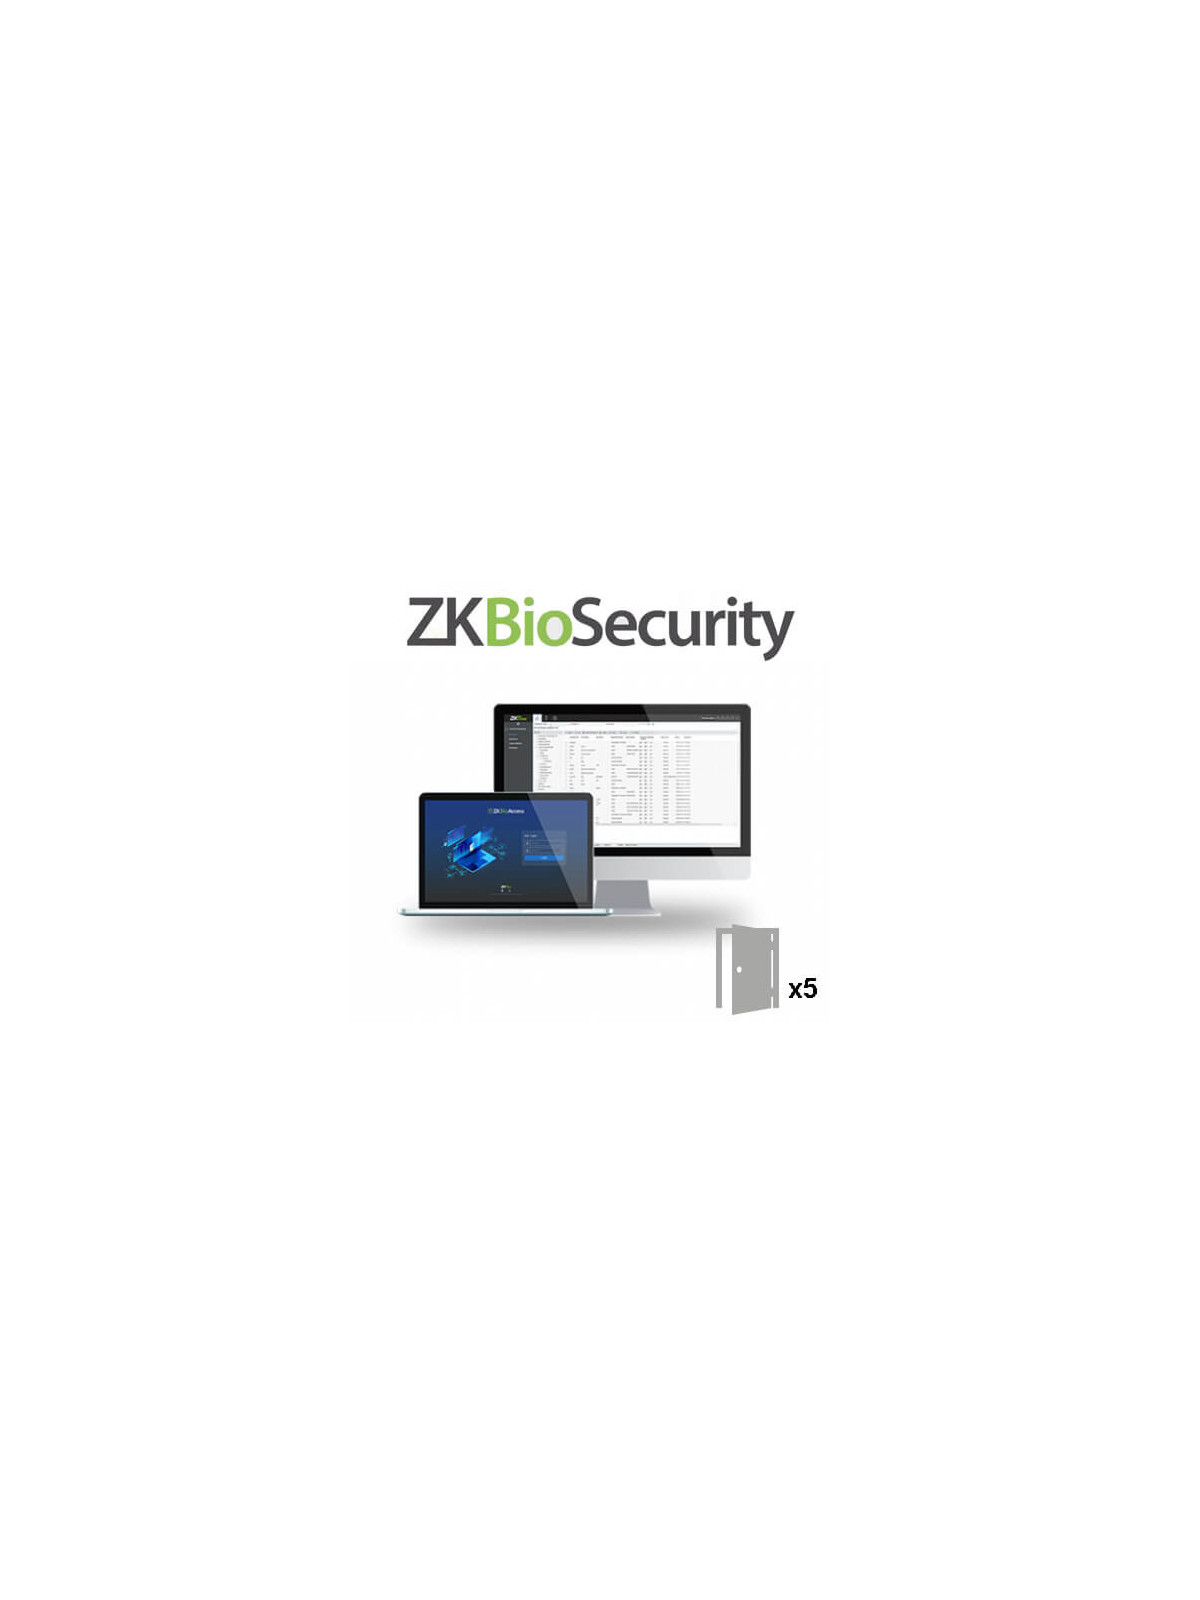 Licencia software control de accesos ZKTeco  ZK-BIOSECURITY-5D 5 puertas